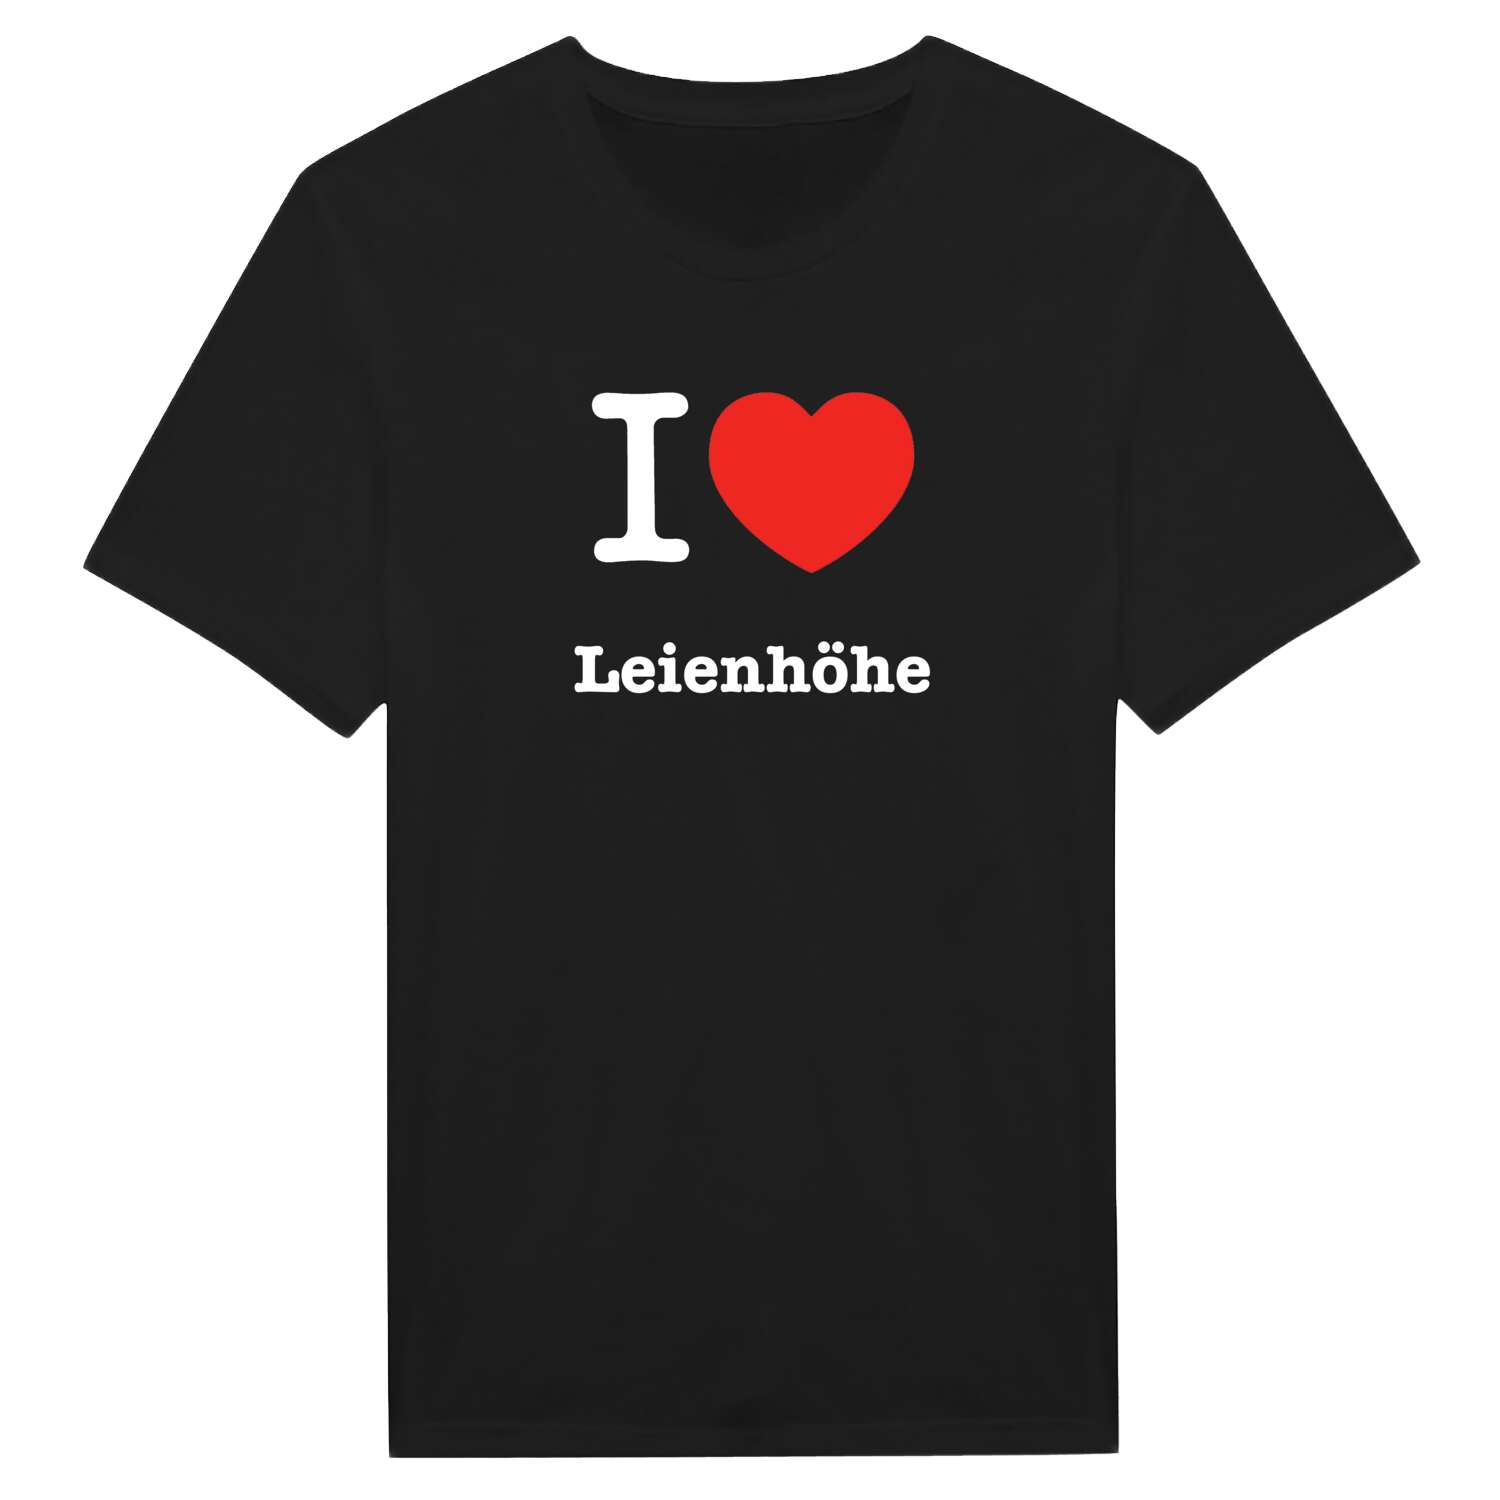 Leienhöhe T-Shirt »I love«